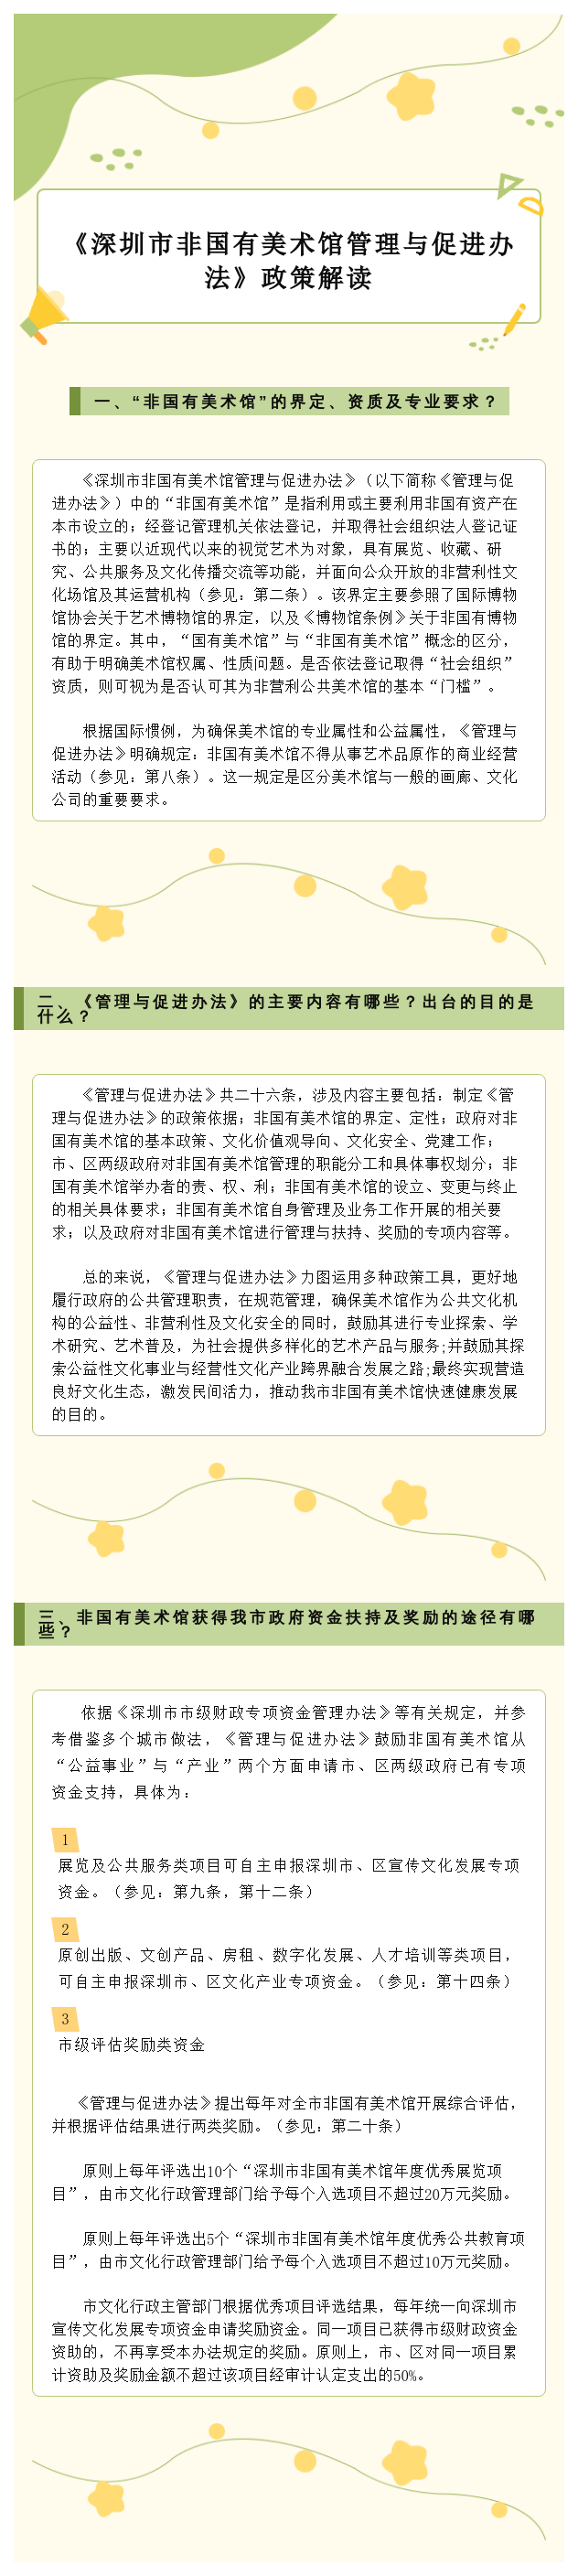 【图解】《深圳市非国有美术馆管理与促进办法》政策解读